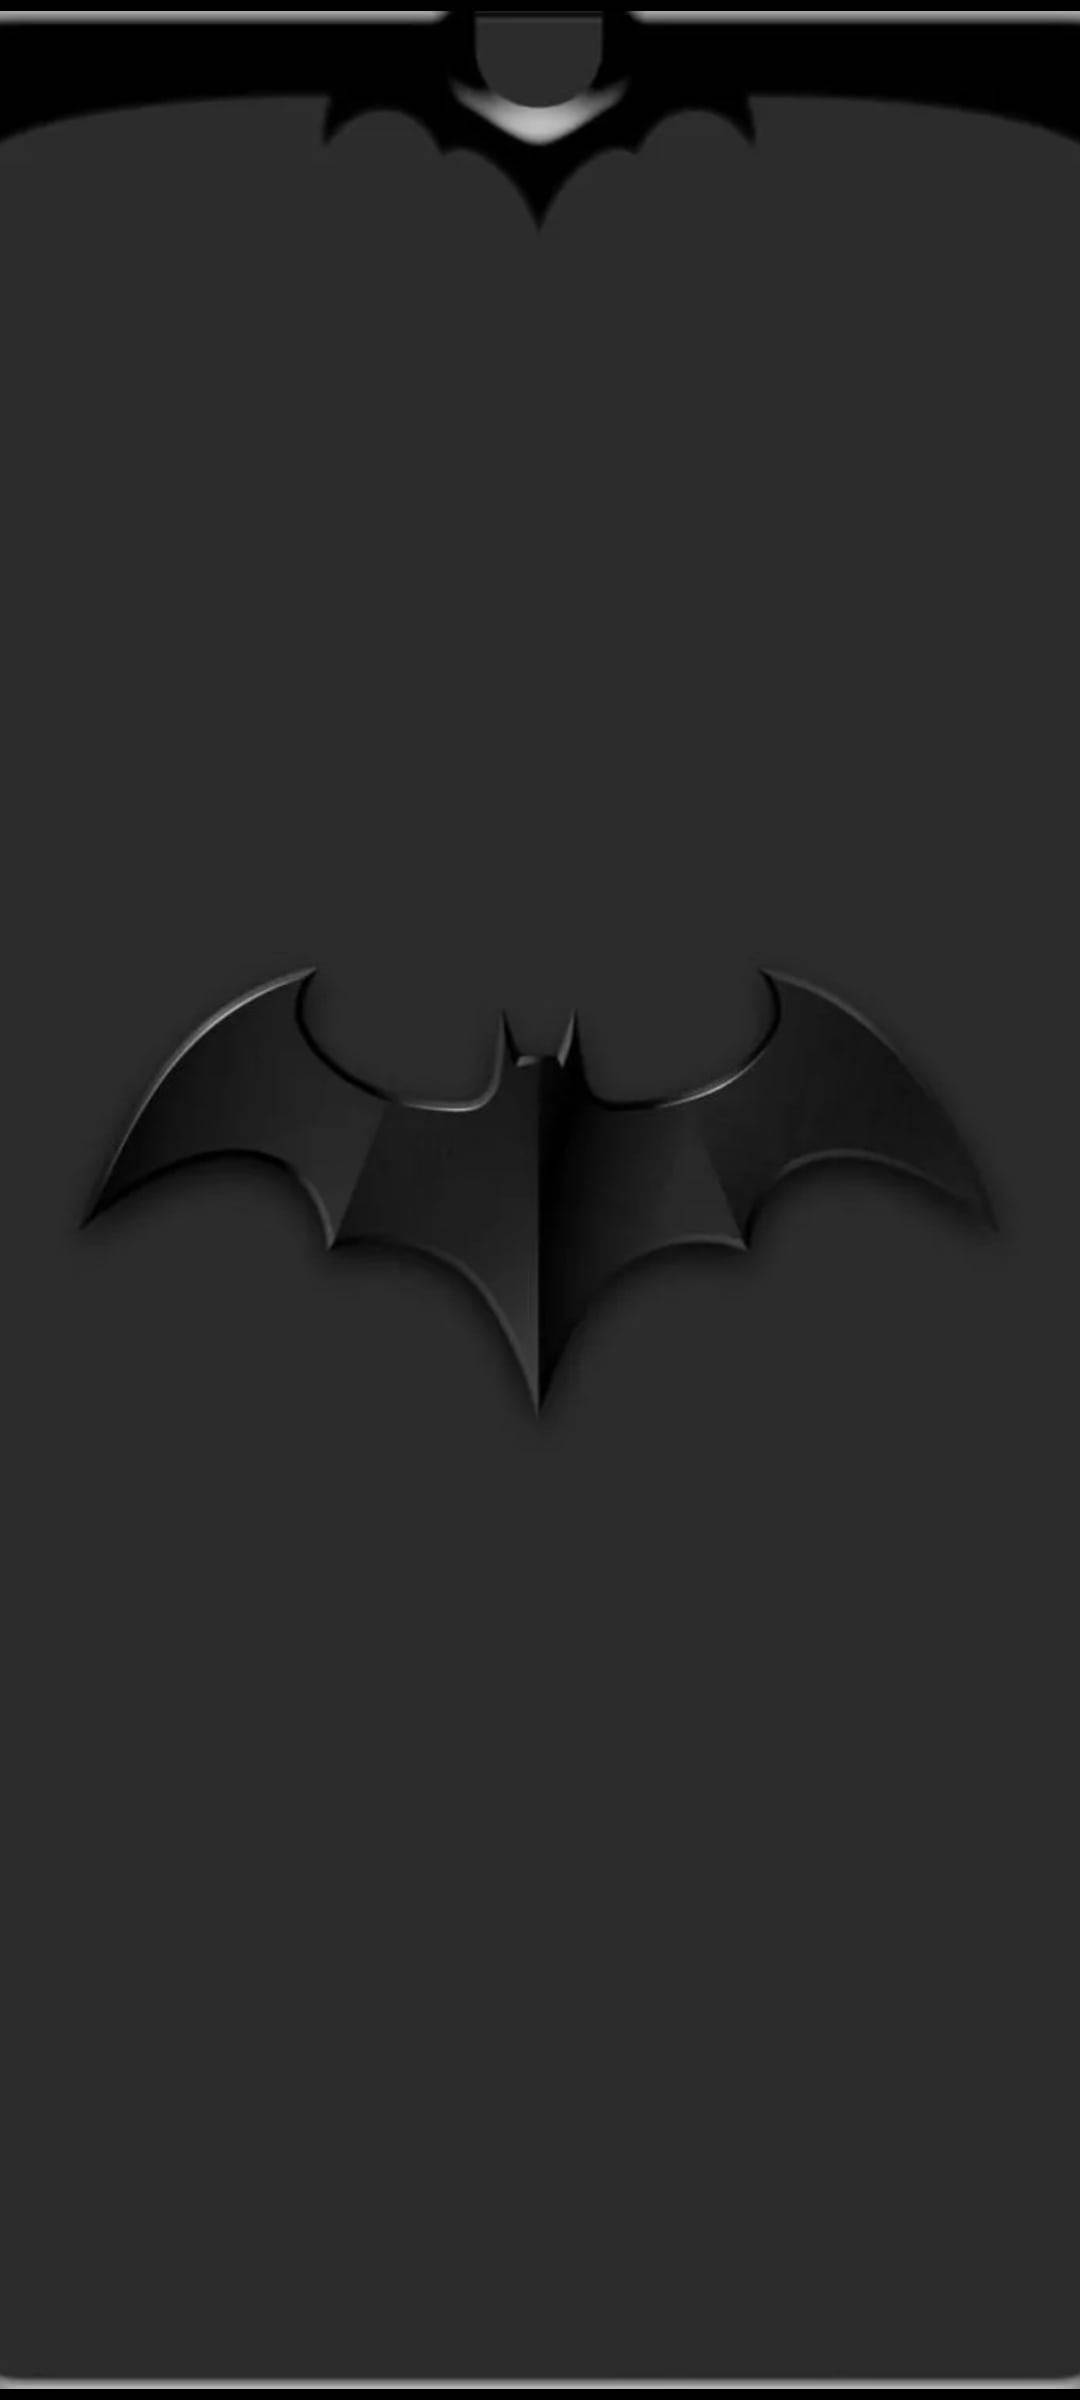 Dot Notch Batman's Bat Symbol Wallpaper